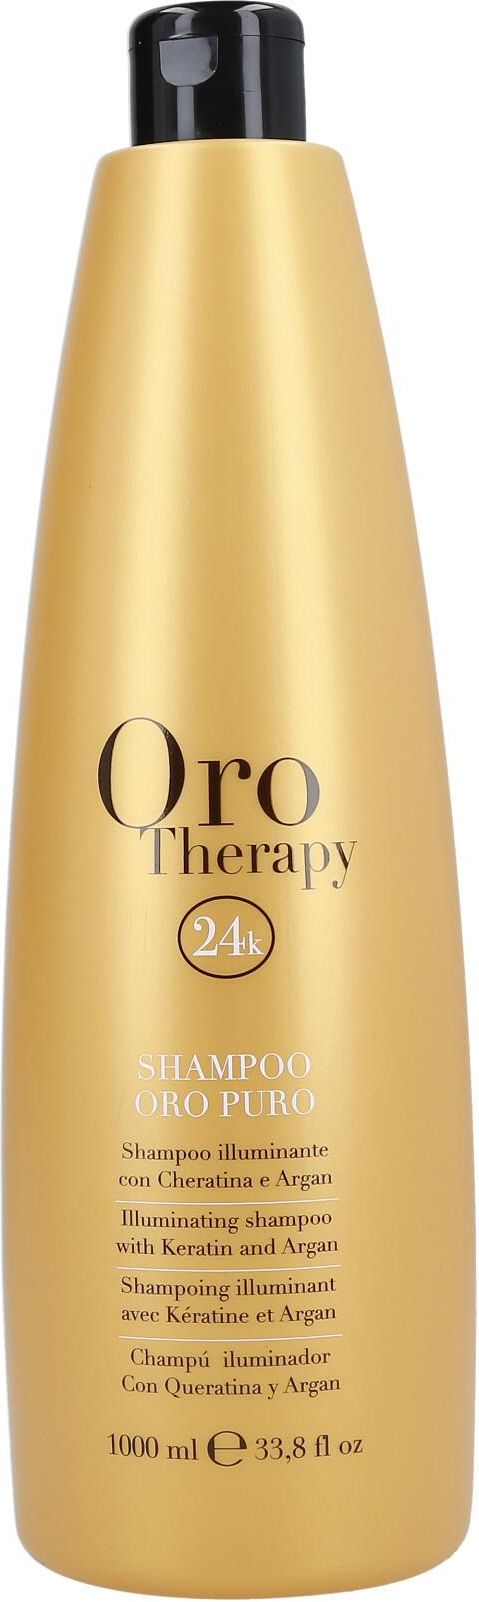 oro therapy szampon